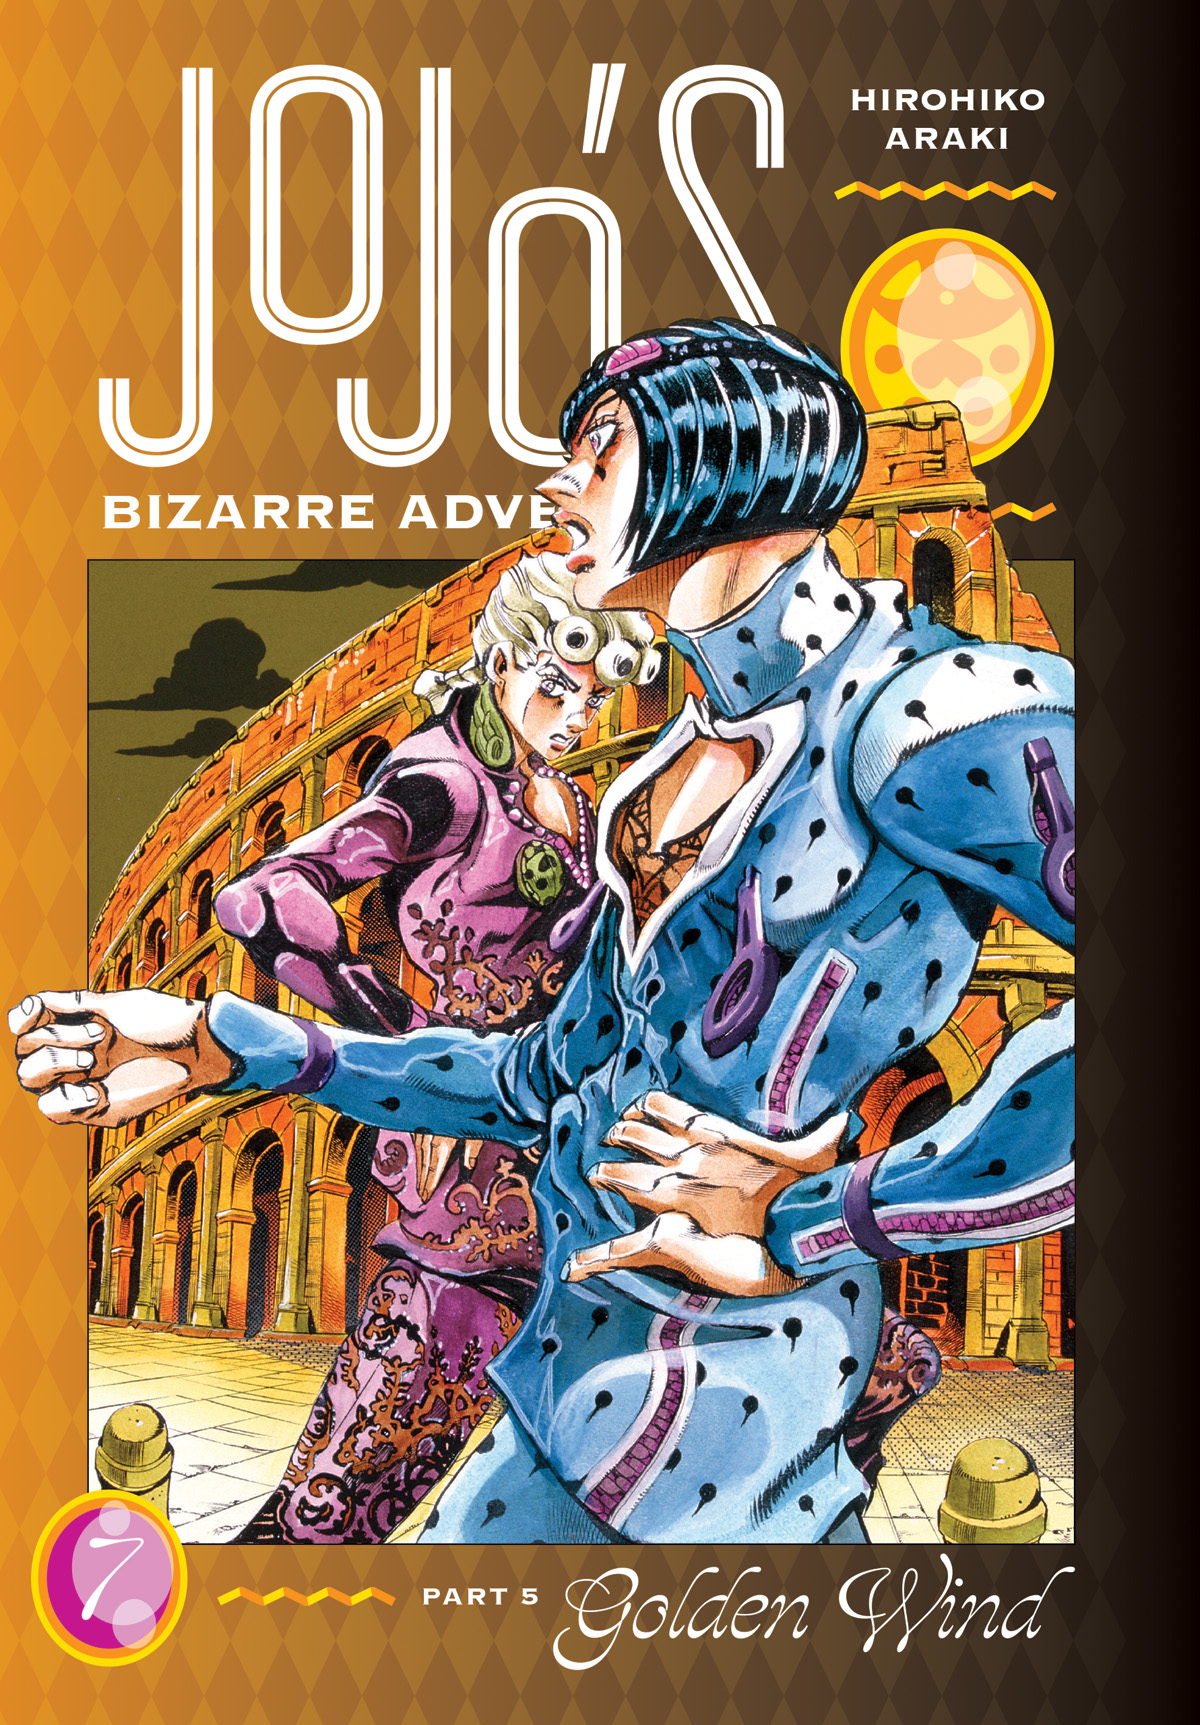 Jojos Bizarre Adventure Part 5 Golden Wind Hardcover Volume 7